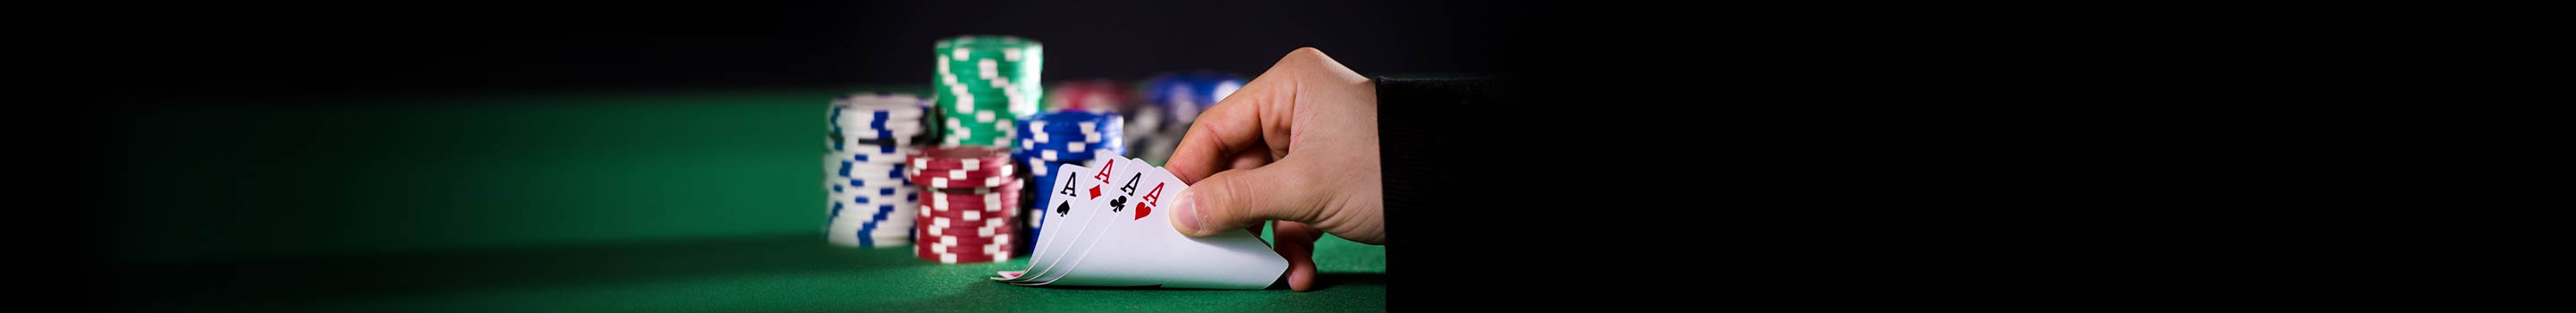 Най-честите грешки при игра на покер